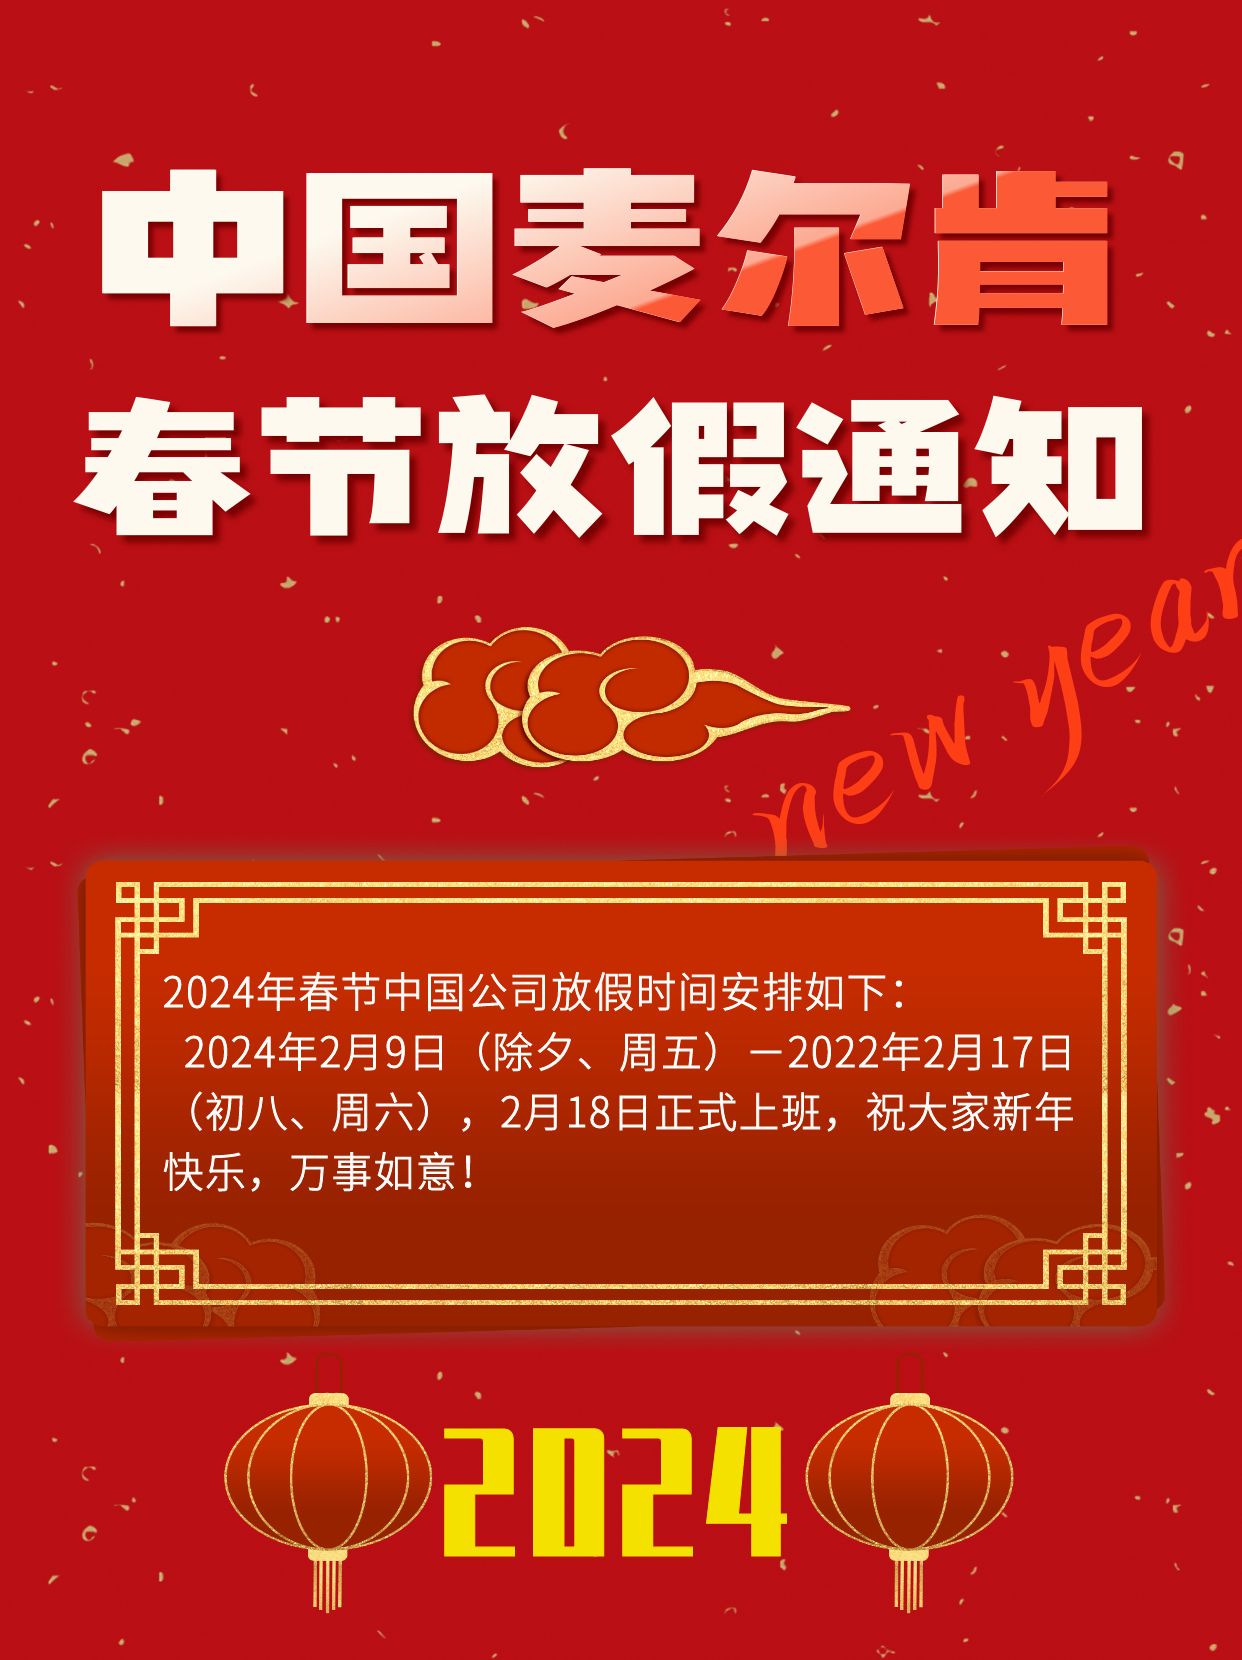 中国麦尔肯春节放假通知：祝大家新年快乐，万事如意！